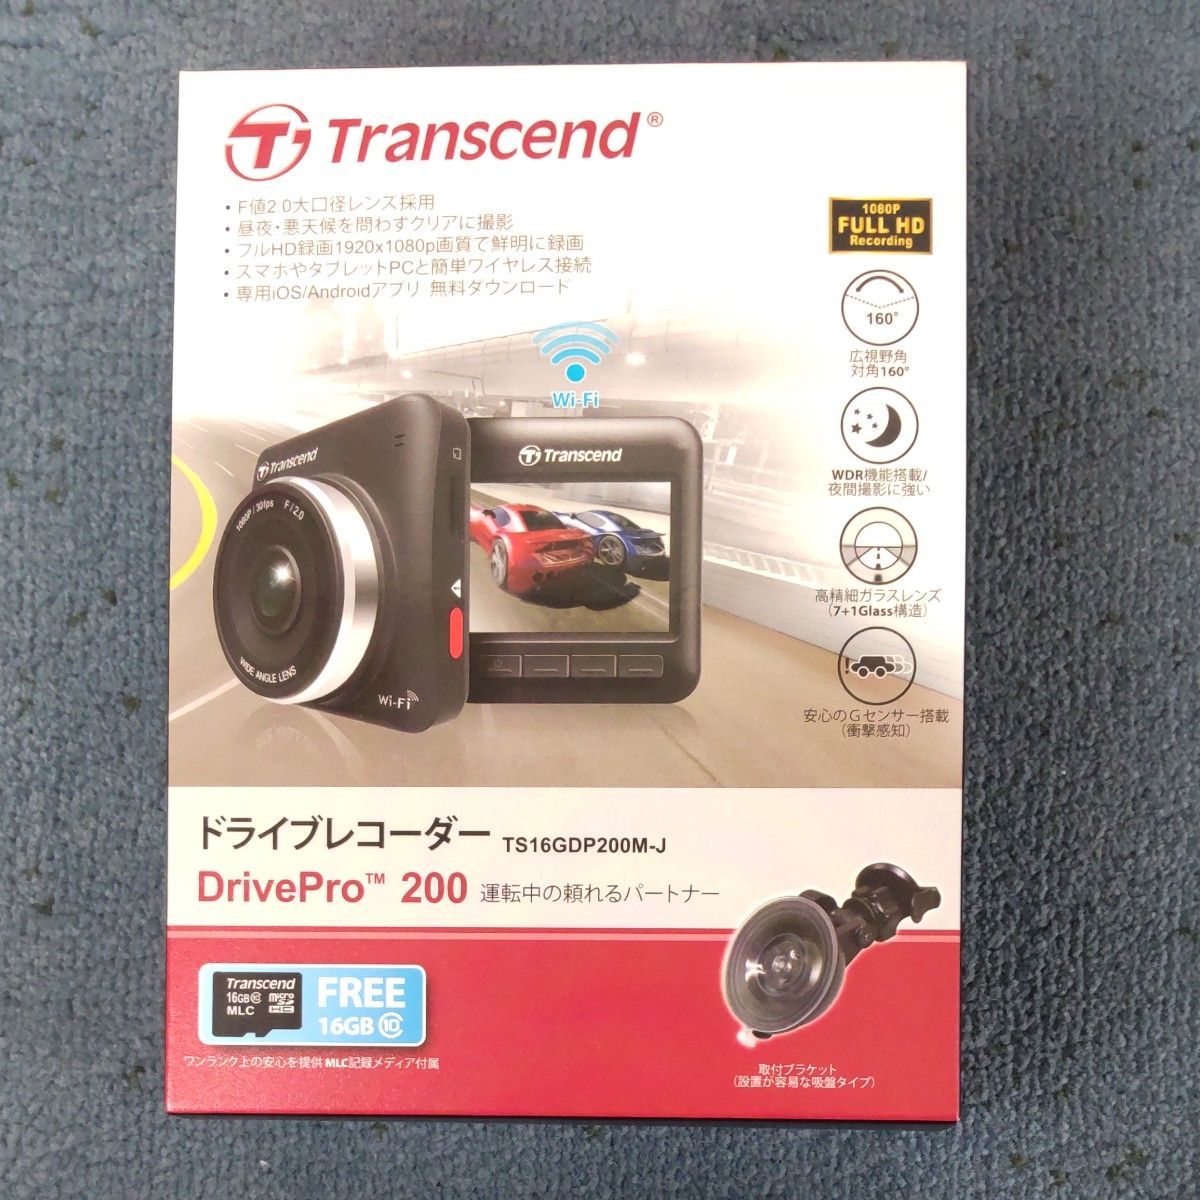 Transcend Drive Pro 200ドライブレコーダー